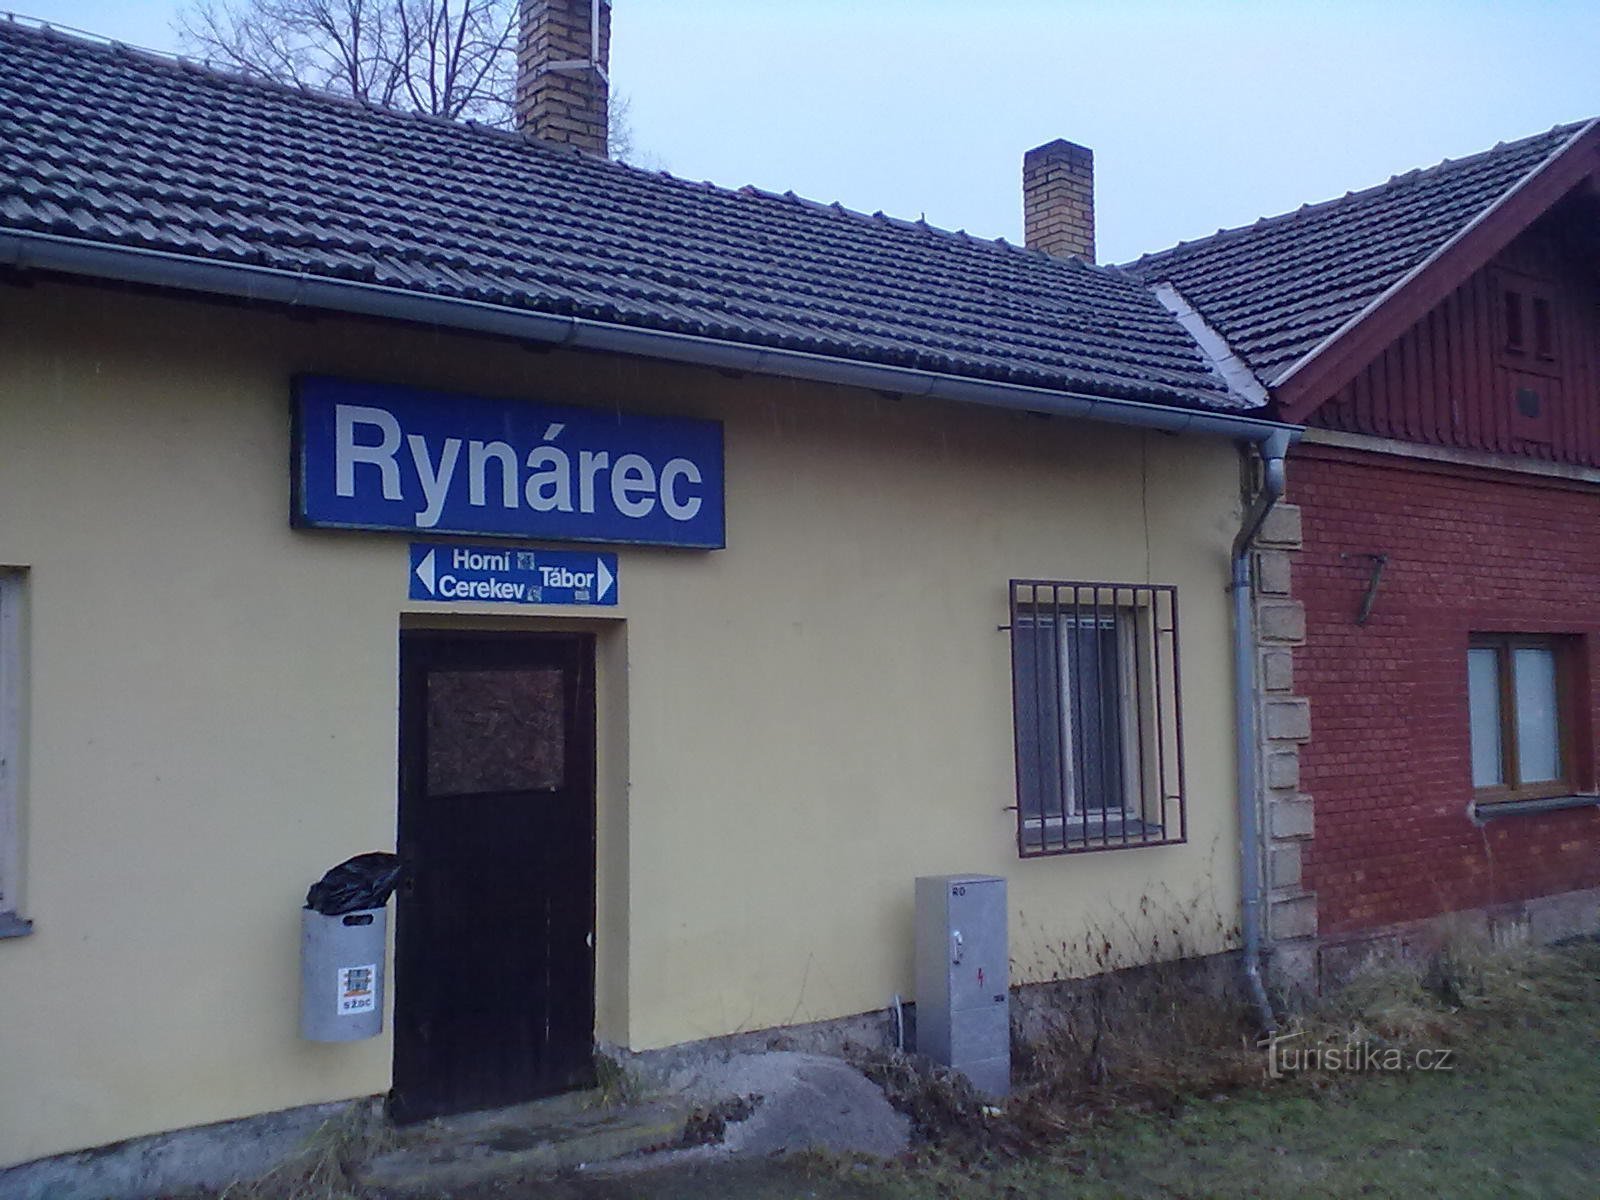 Începutul călătoriei. Oprire în Rynárec, chiar lângă Pelhřimov. De dimineață plouă curajos.